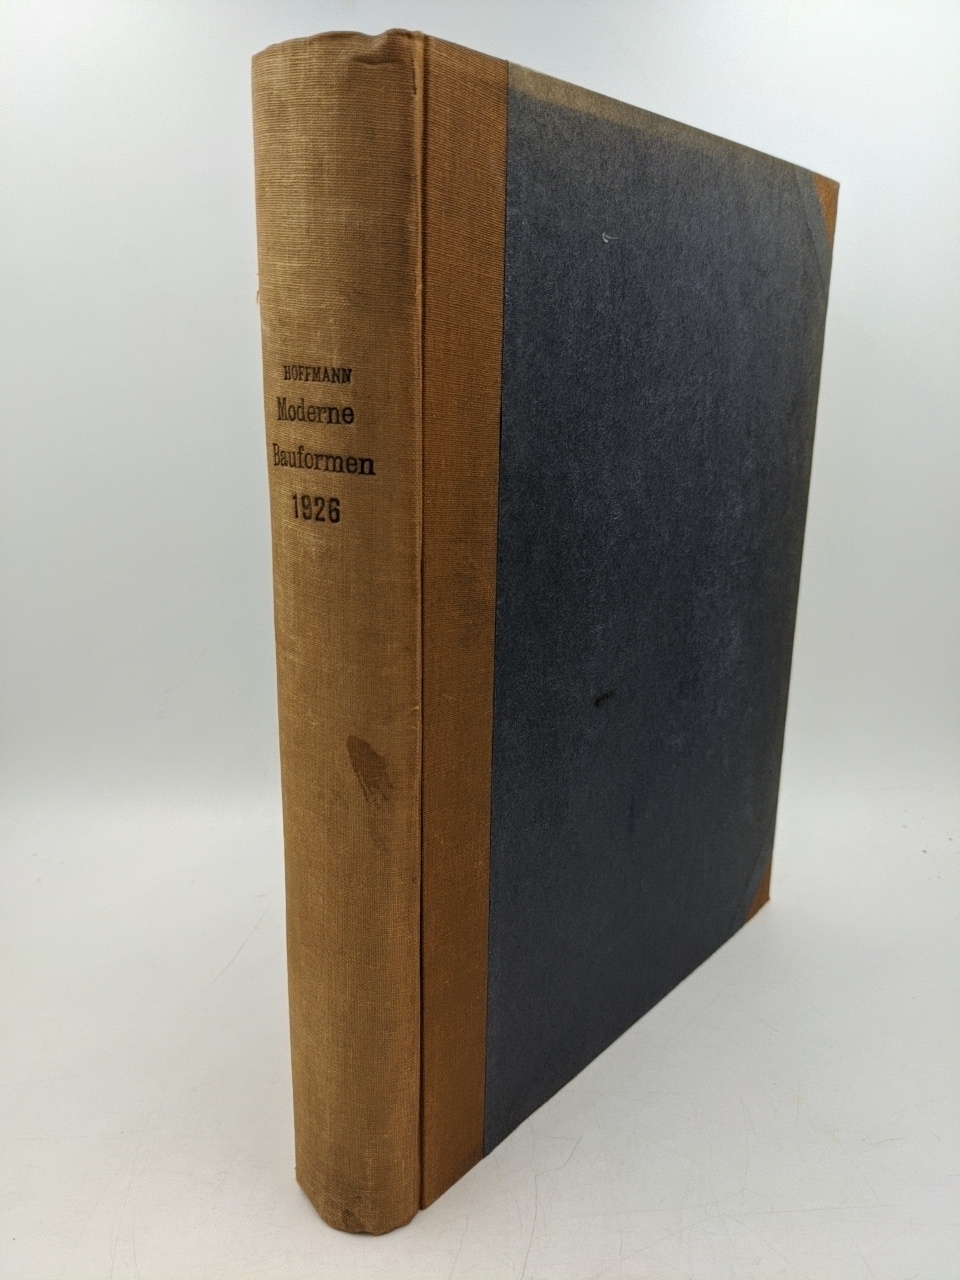   Moderne Bauformen - XXV. [25.] Jahrgang 1926, 12 Hefte [komplett] in einem Einband. 